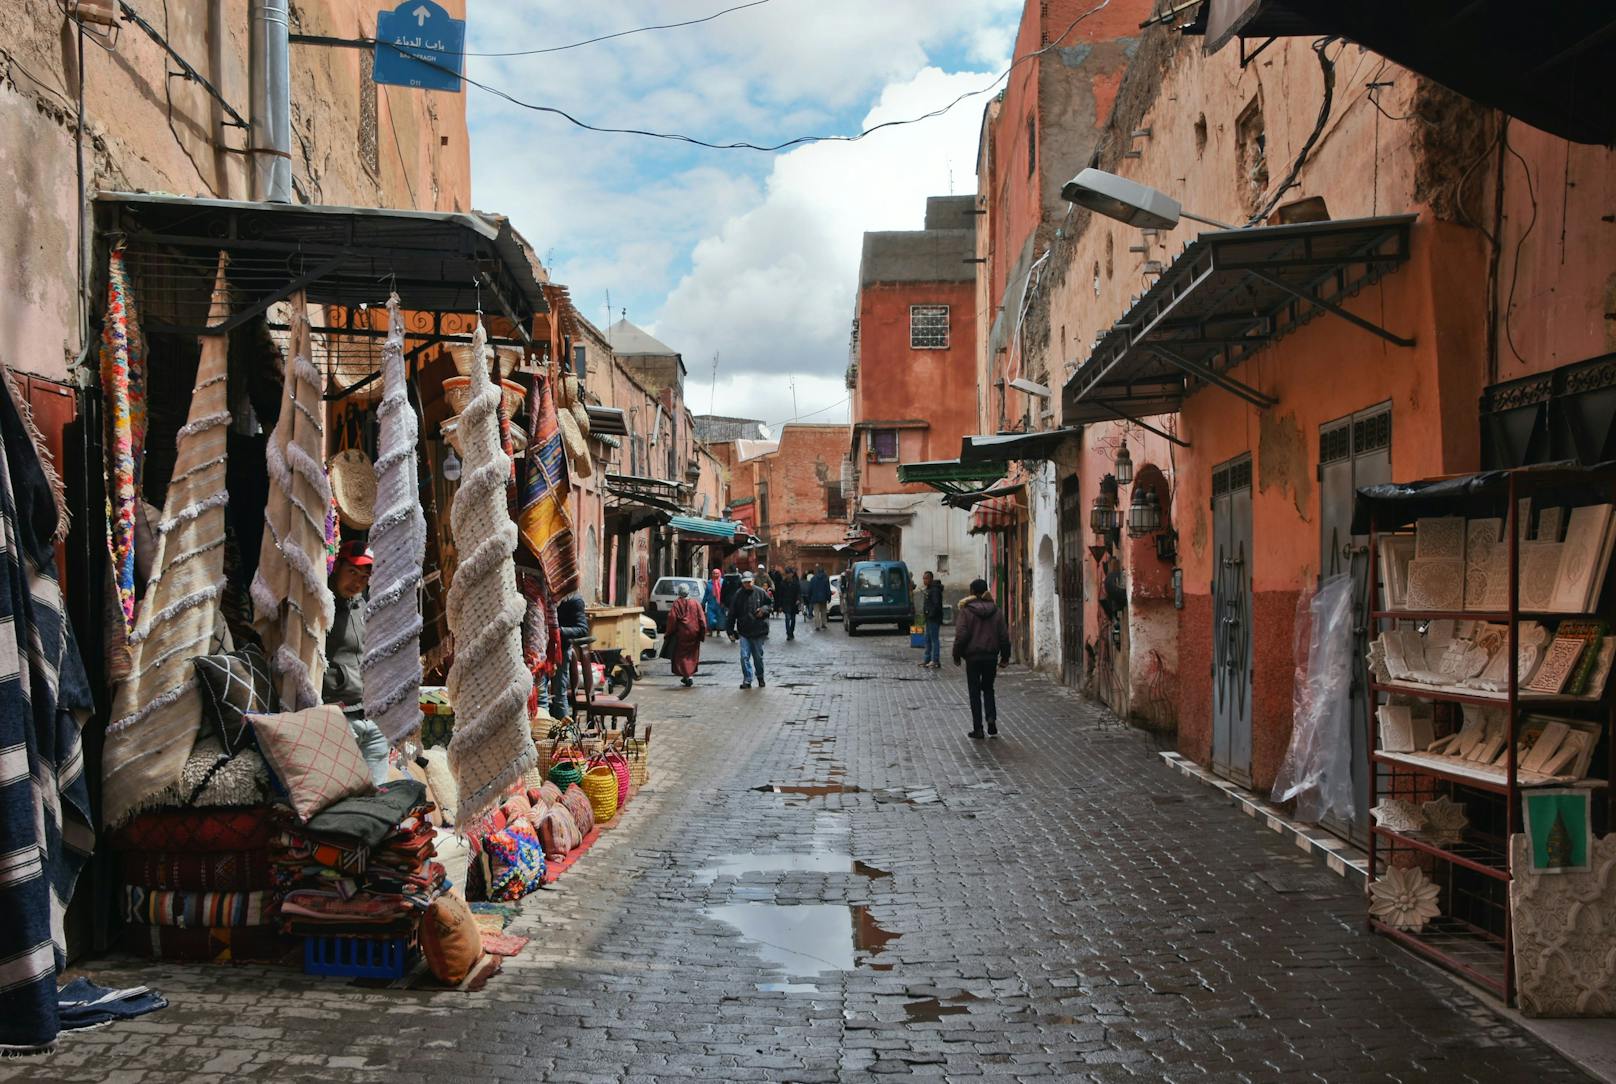 <strong>Marrakesch, Marokko!</strong>&nbsp;Marrakesch ist ein wichtiges Wirtschaftszentrum mit vielen Moscheen, Palästen und Gärten. Es gilt für viele als Traumdestination – aber nicht für User legshampoo: "Ich weiß, alle lieben Marrakesch. Aber ich habe es gehasst. Es fühlt sich an wie eine Disneyland-Version der marokkanischen Kultur, viele 'handgemachte' Produkte stammen aus China. Große Teile der Stadt fühlen sich an, als gehe es nur darum, möglichst dumme Touristen anzulocken."&nbsp;Ein Reddit-User, der in Marrakesch wohnt, sieht es ähnlich. Eine Userin ergänzt: "Ich bin einige Wochen durch Marokko gereist und es war schön, aber wahnsinnig anstrengend. Manchmal musste ich von einem Aufpasser begleitet werden und mir sind komische Dinge passiert – etwa Fremde, die mir folgen oder an meinen Haaren gerochen haben."